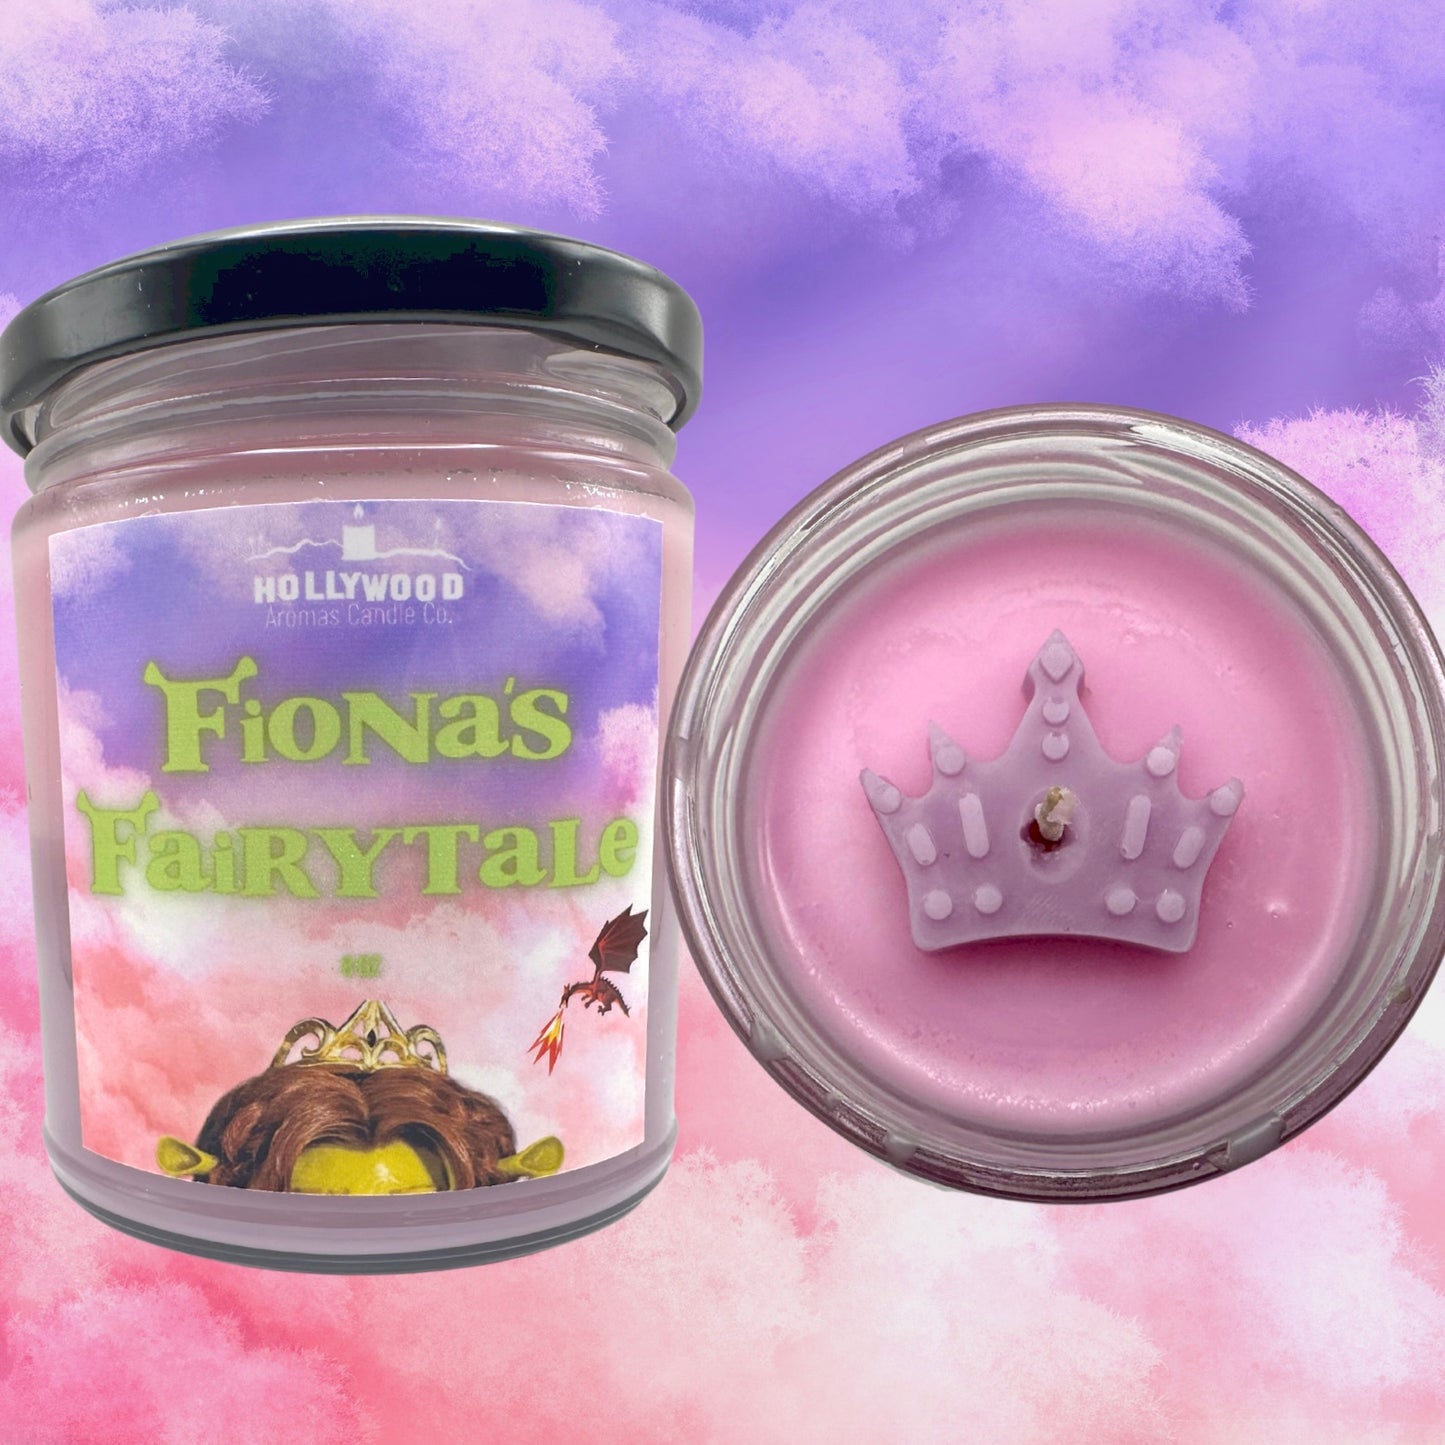 Fiona’s Fairytale (Shrek Candle)